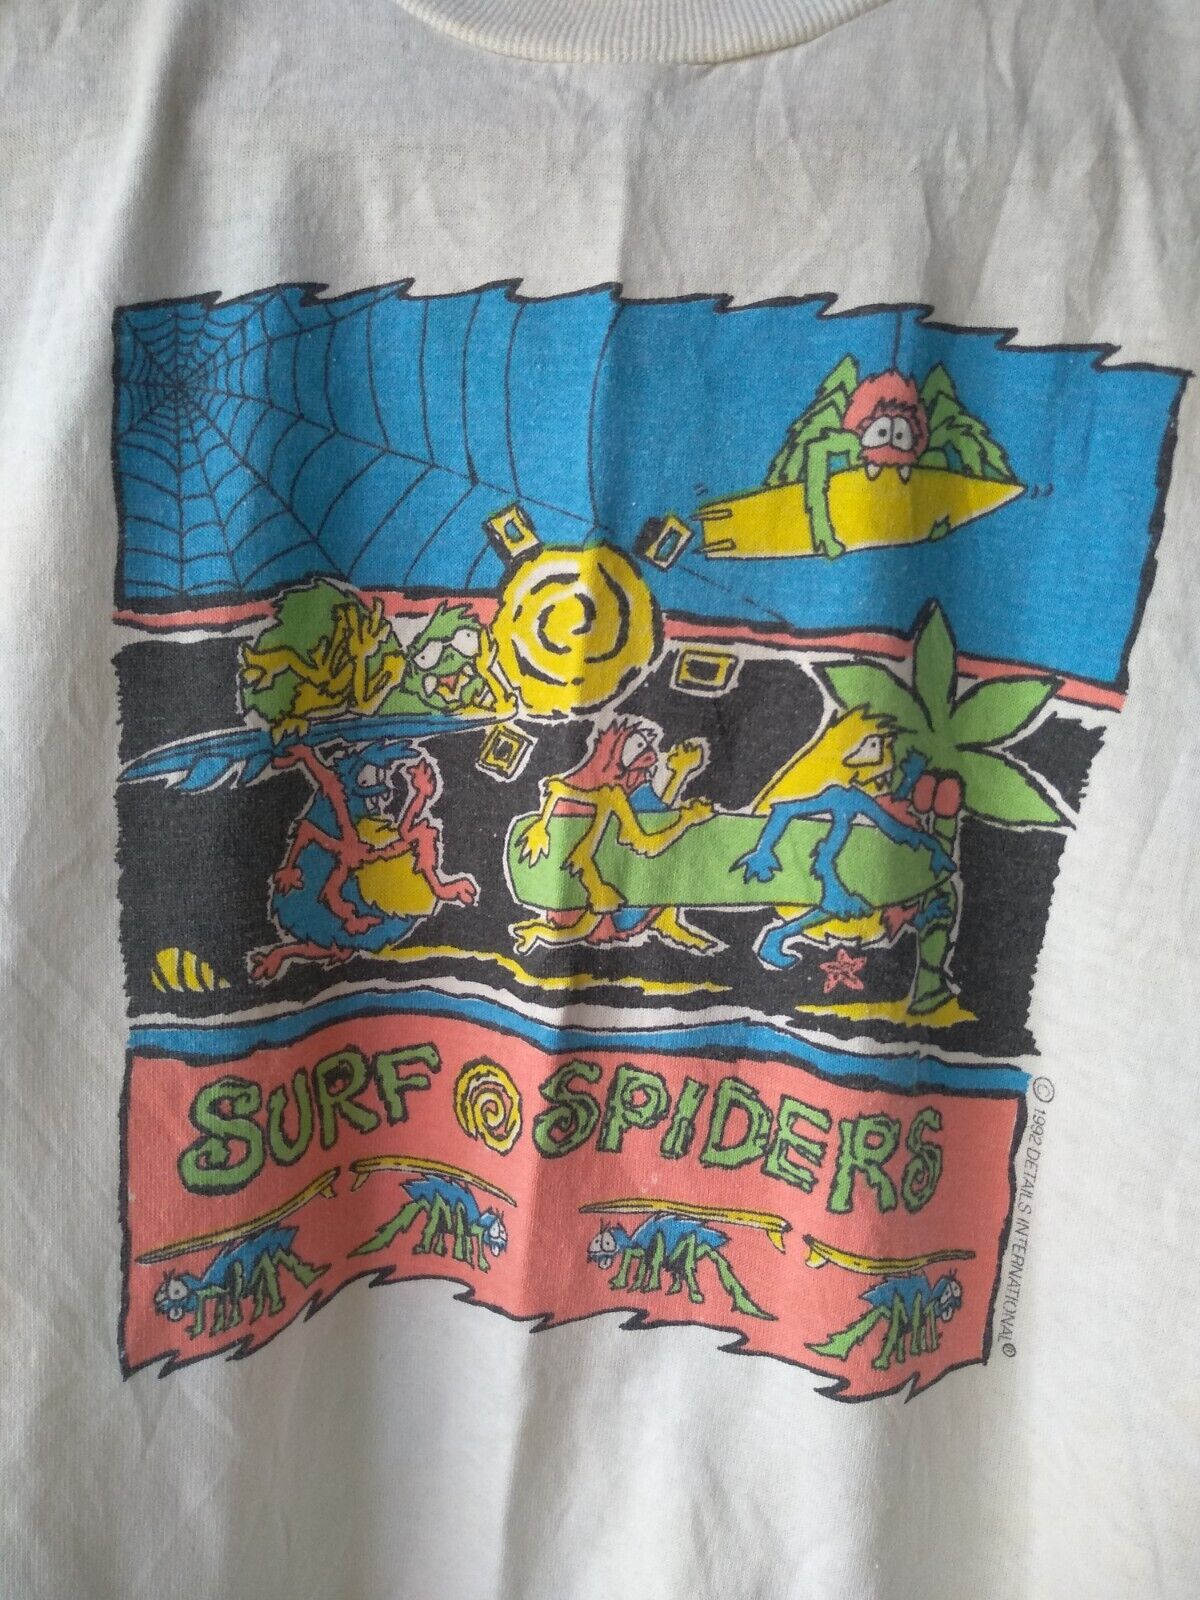 Vintage 1992 Surf Spiders Details International T-shirt 